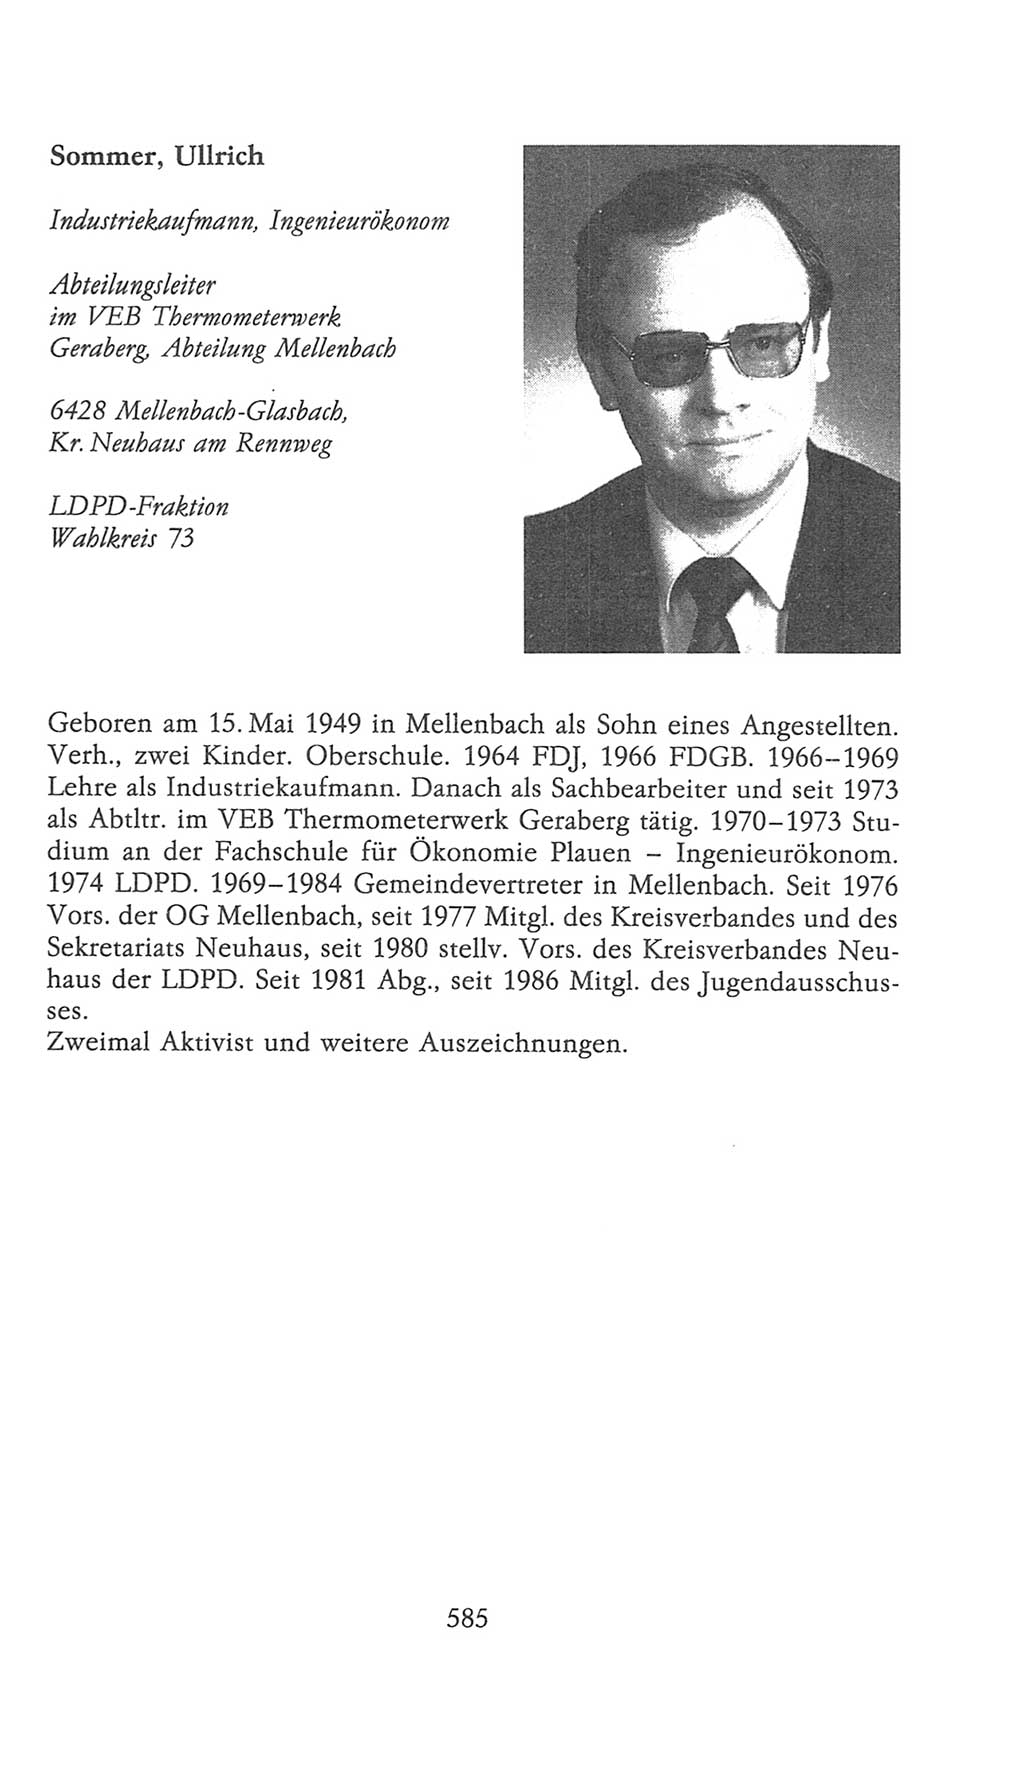 Volkskammer (VK) der Deutschen Demokratischen Republik (DDR), 9. Wahlperiode 1986-1990, Seite 585 (VK. DDR 9. WP. 1986-1990, S. 585)